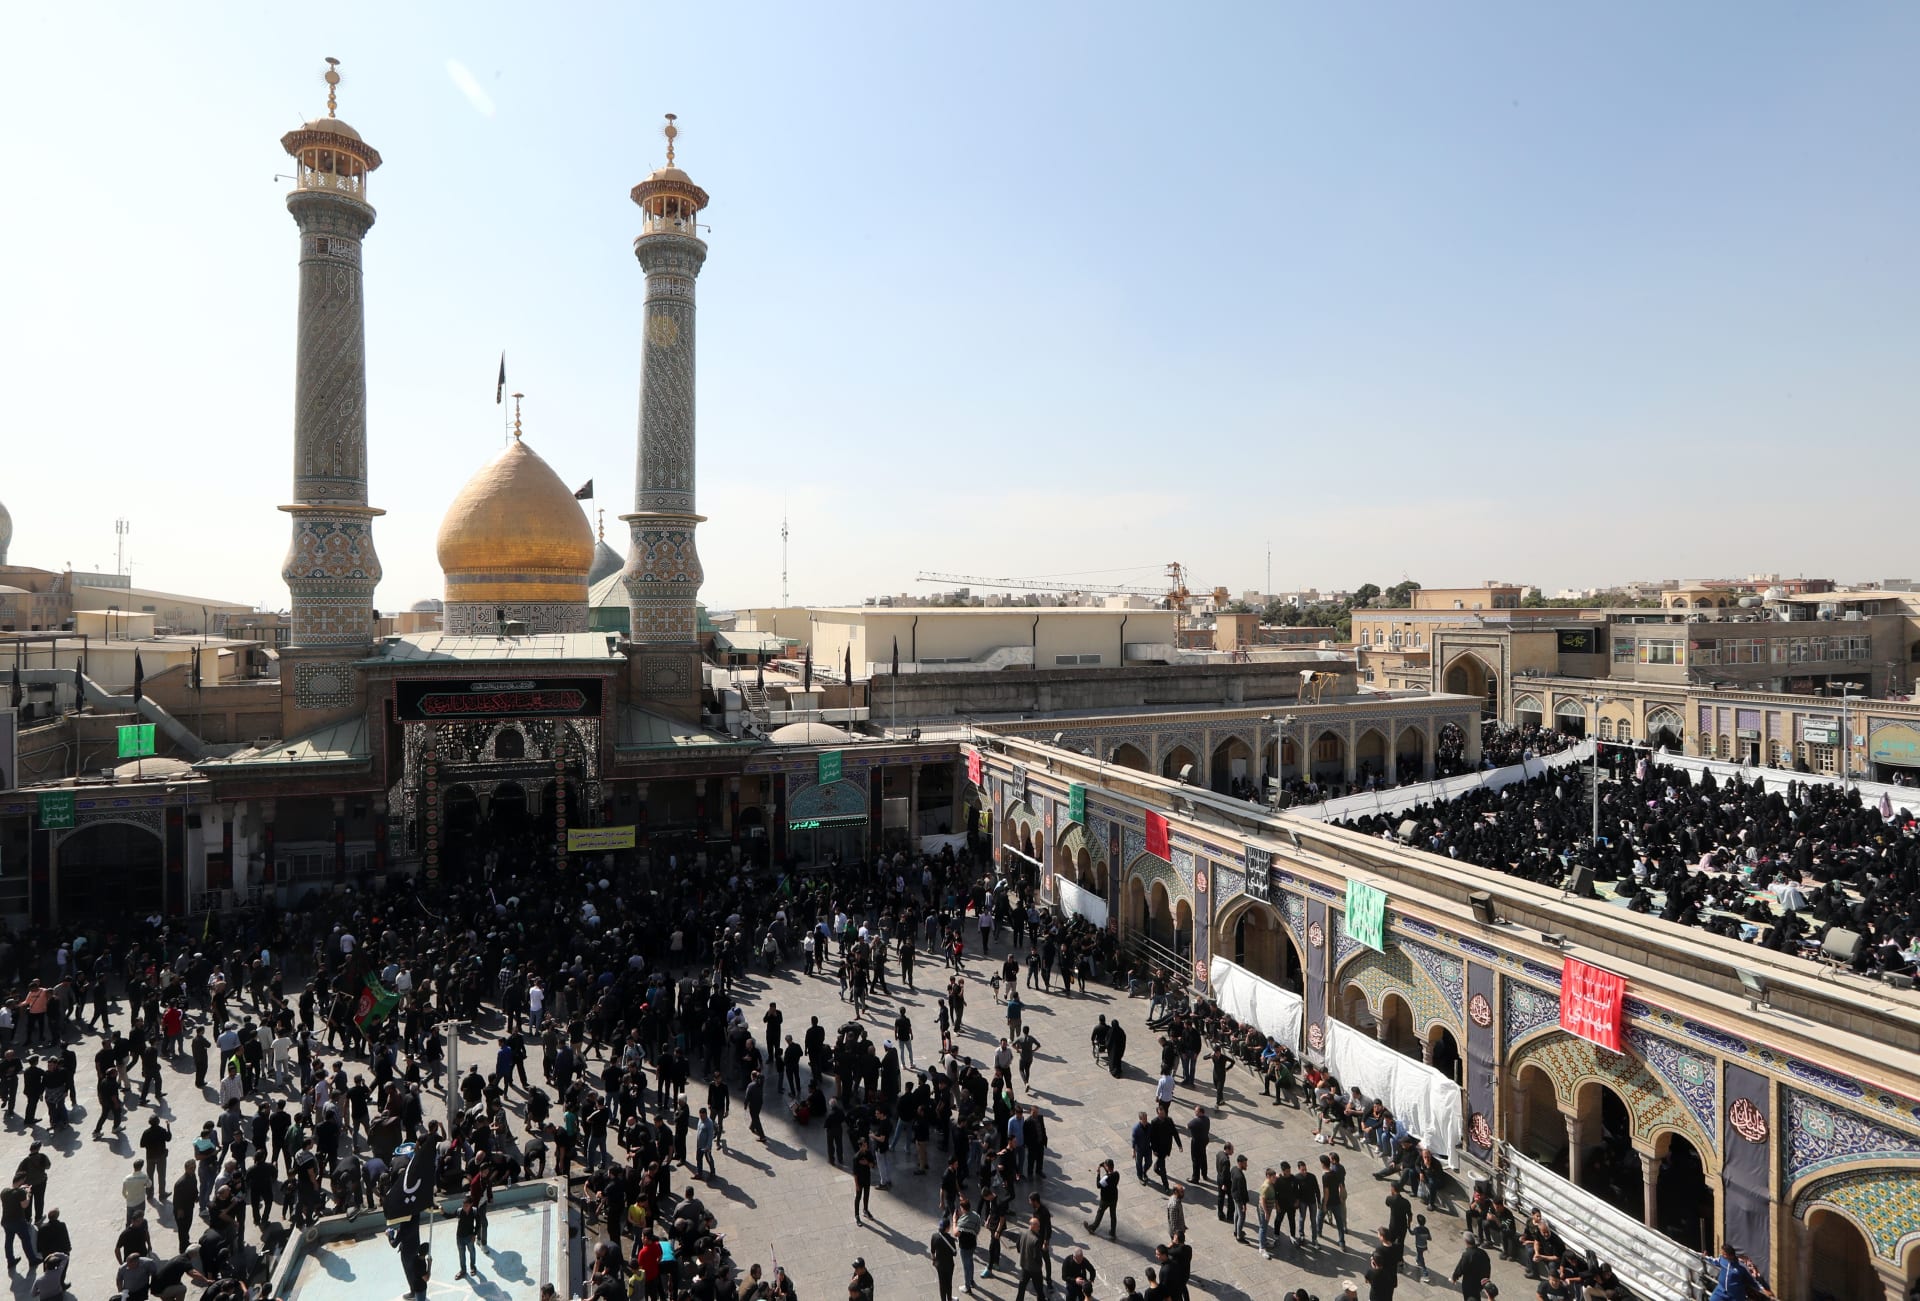 خطيب الجمعة في طهران يحذر العراقيين واللبنانيين من "مؤامرات الأعداء"